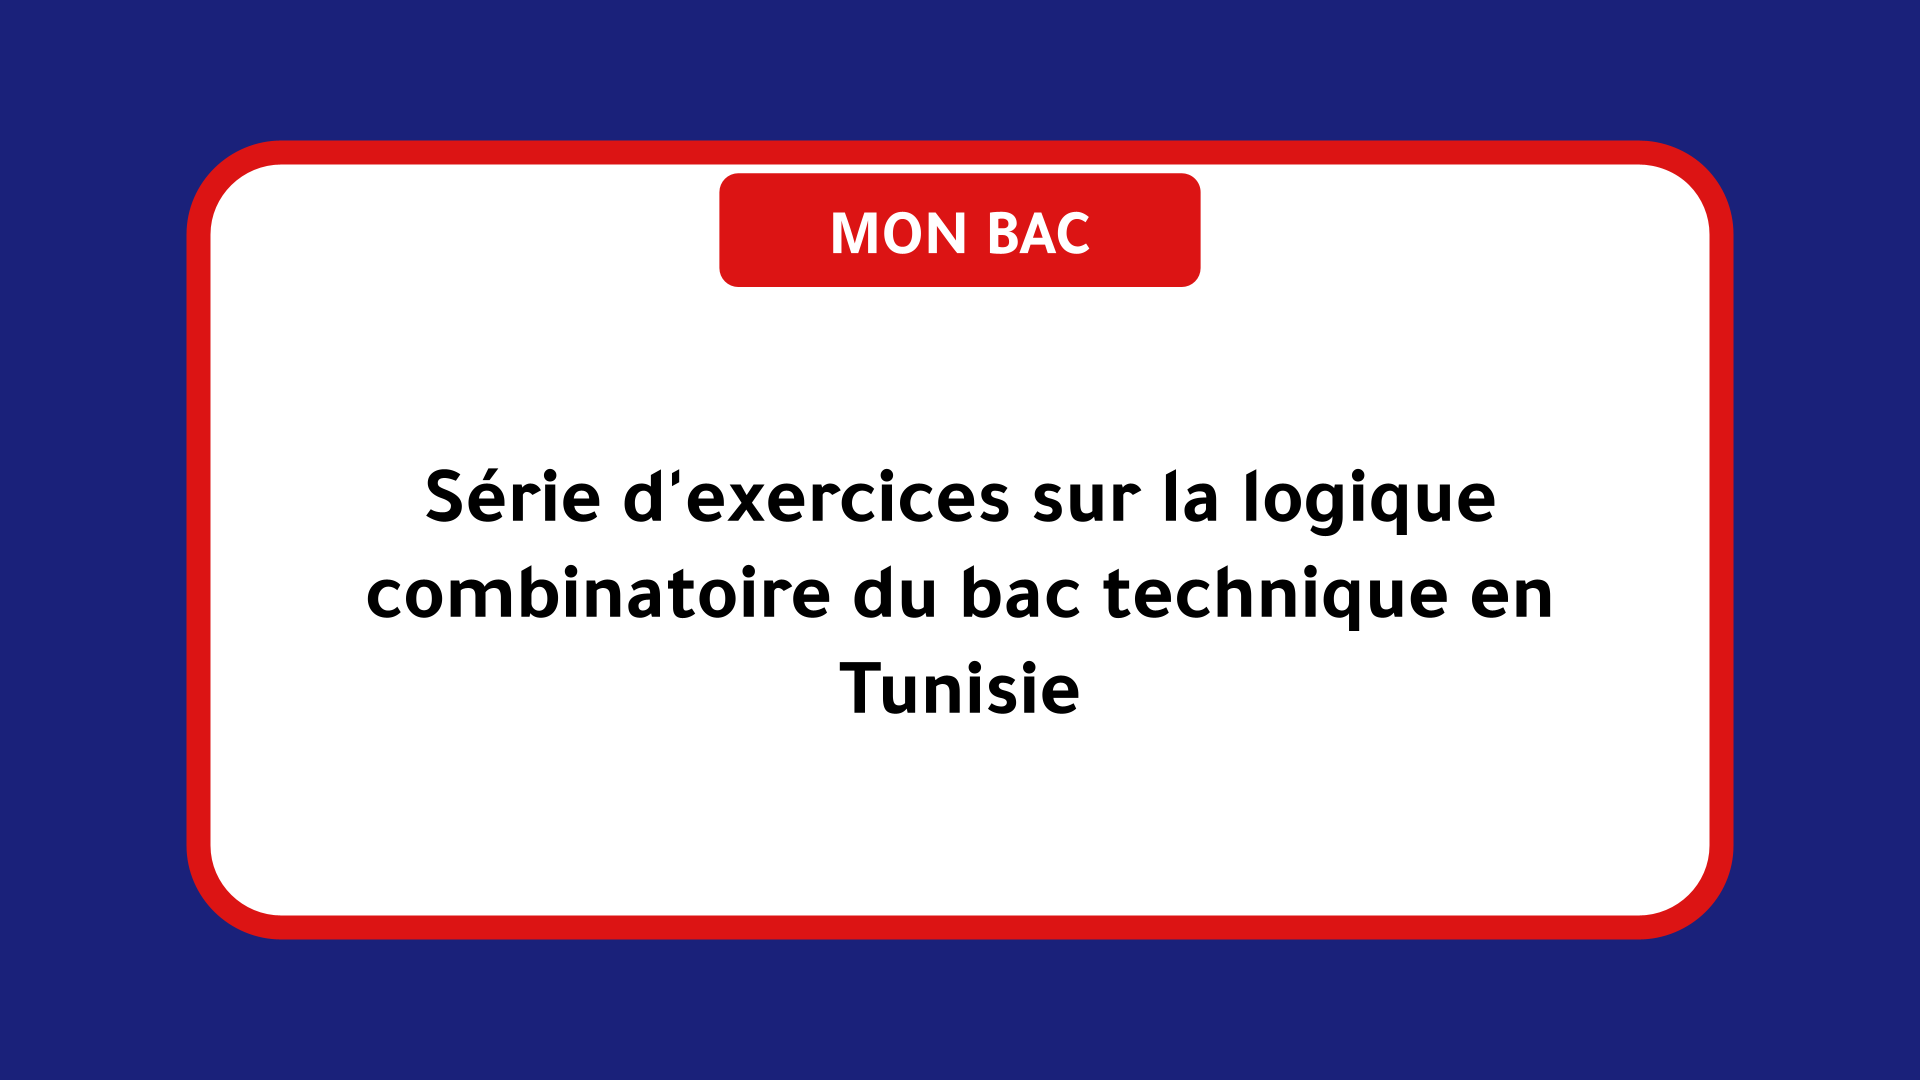 Série d'exercices sur la logique combinatoire bac technique Tunisie